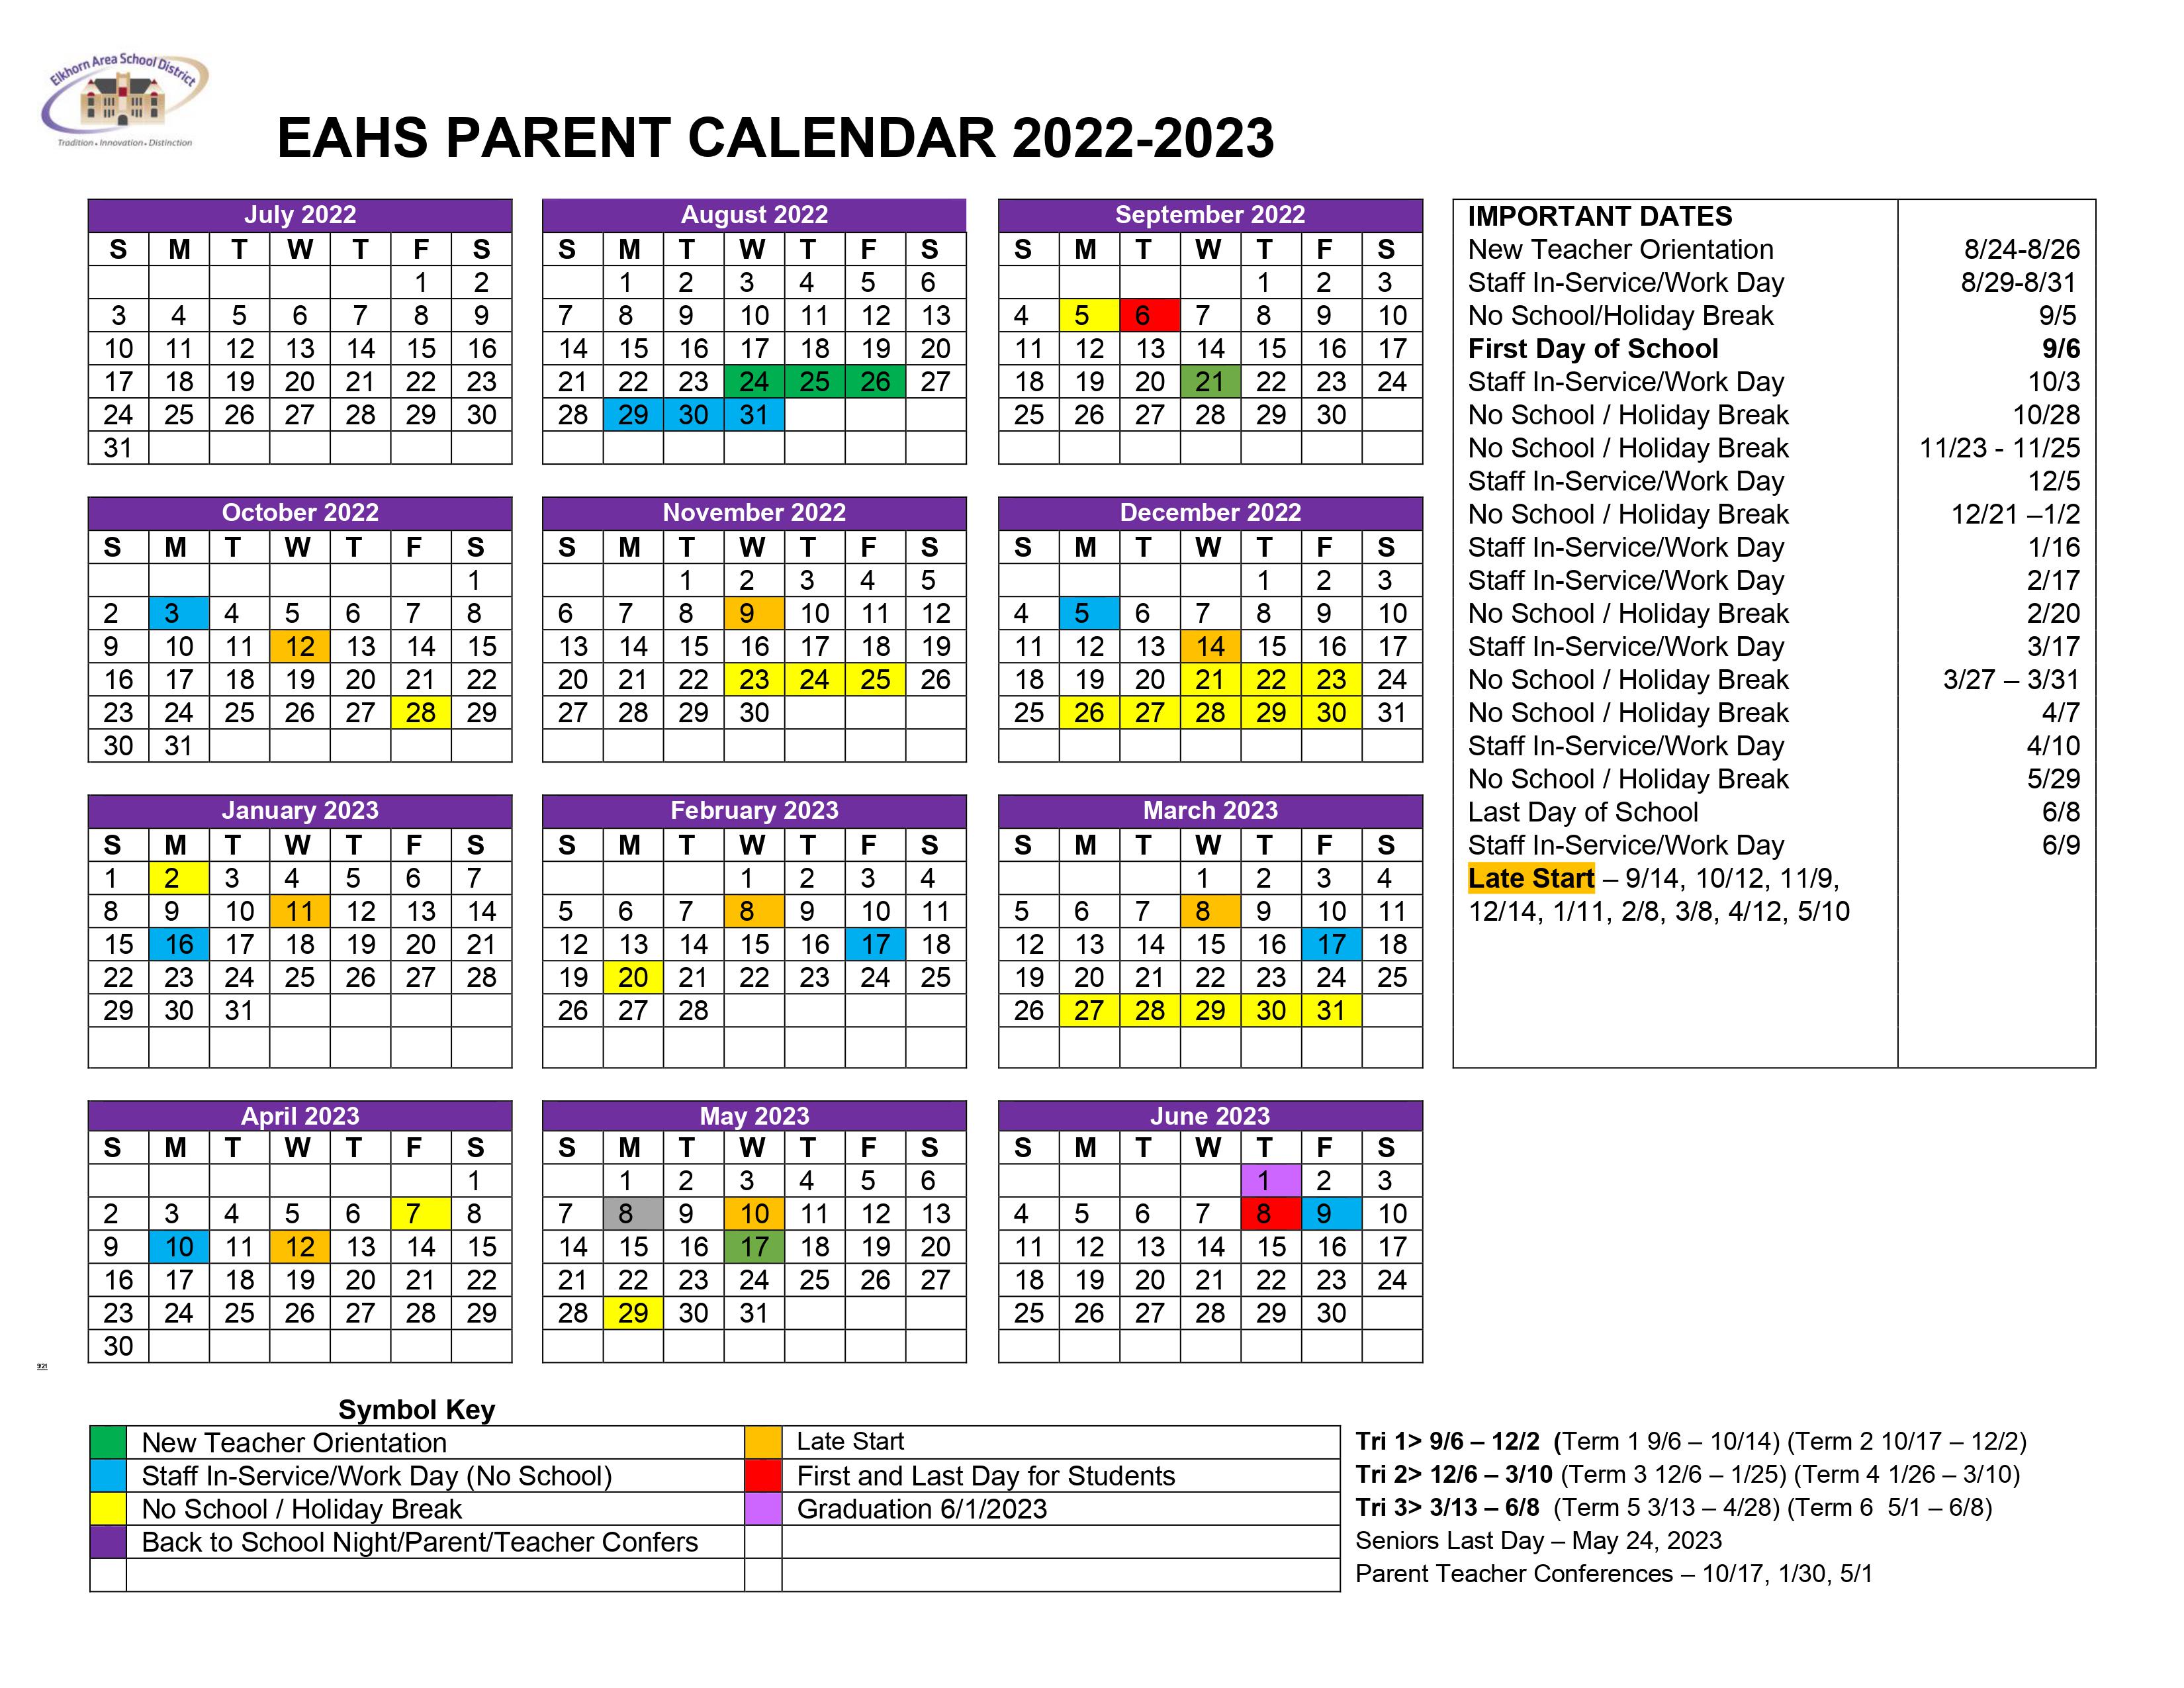 parent-calendar-elkhorn-area-high-school